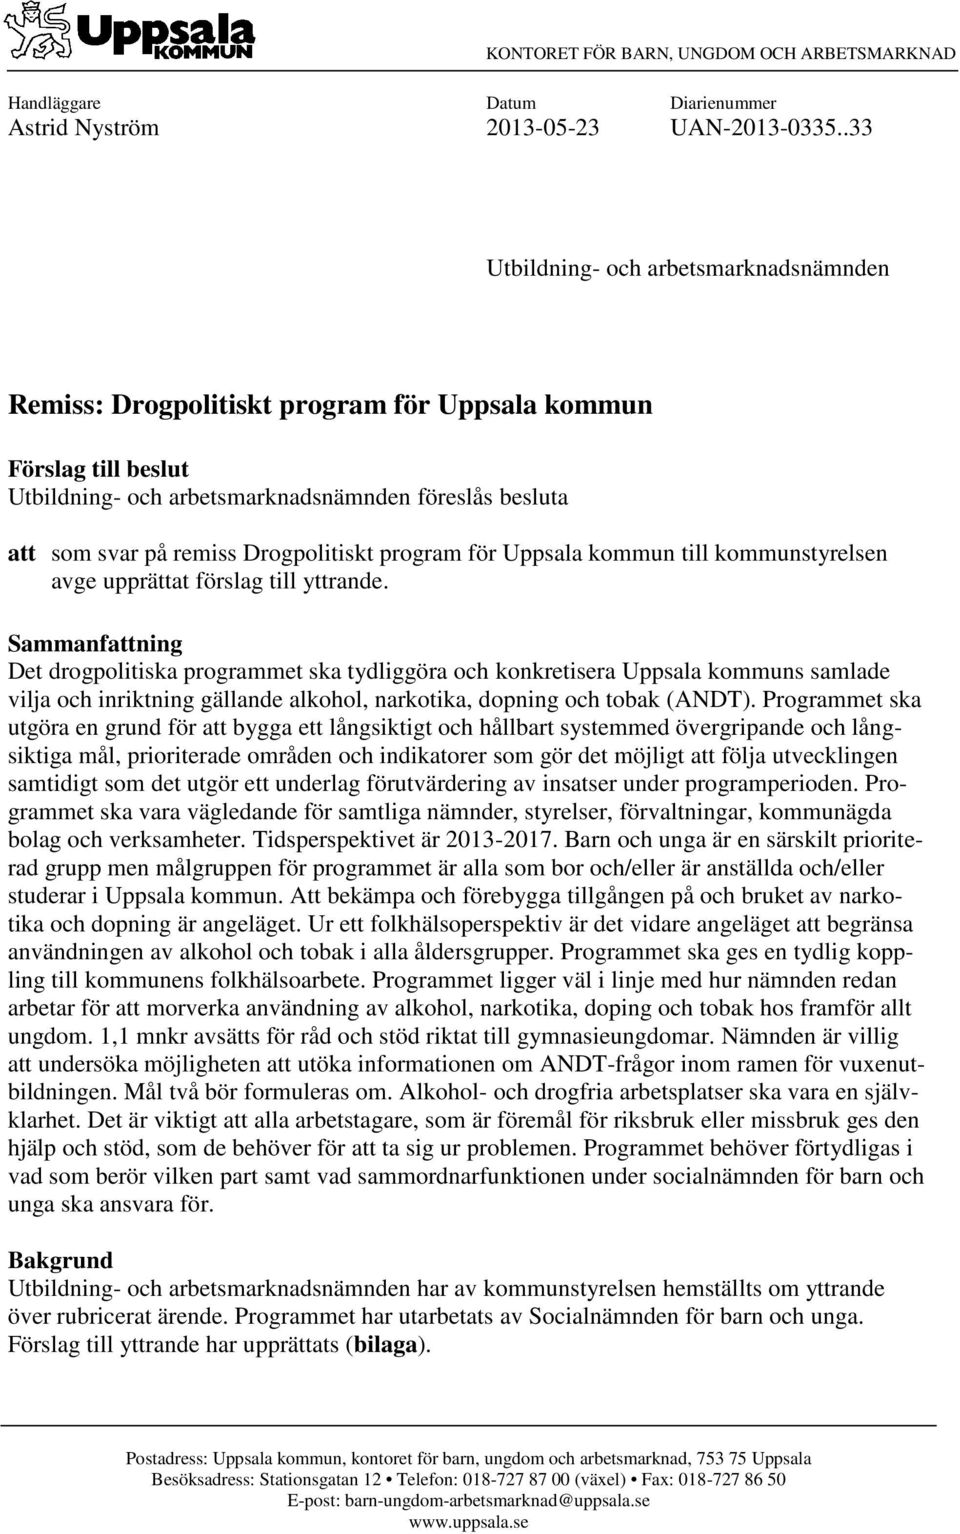 Drogpolitiskt program för Uppsala kommun till kommunstyrelsen avge upprättat förslag till yttrande.